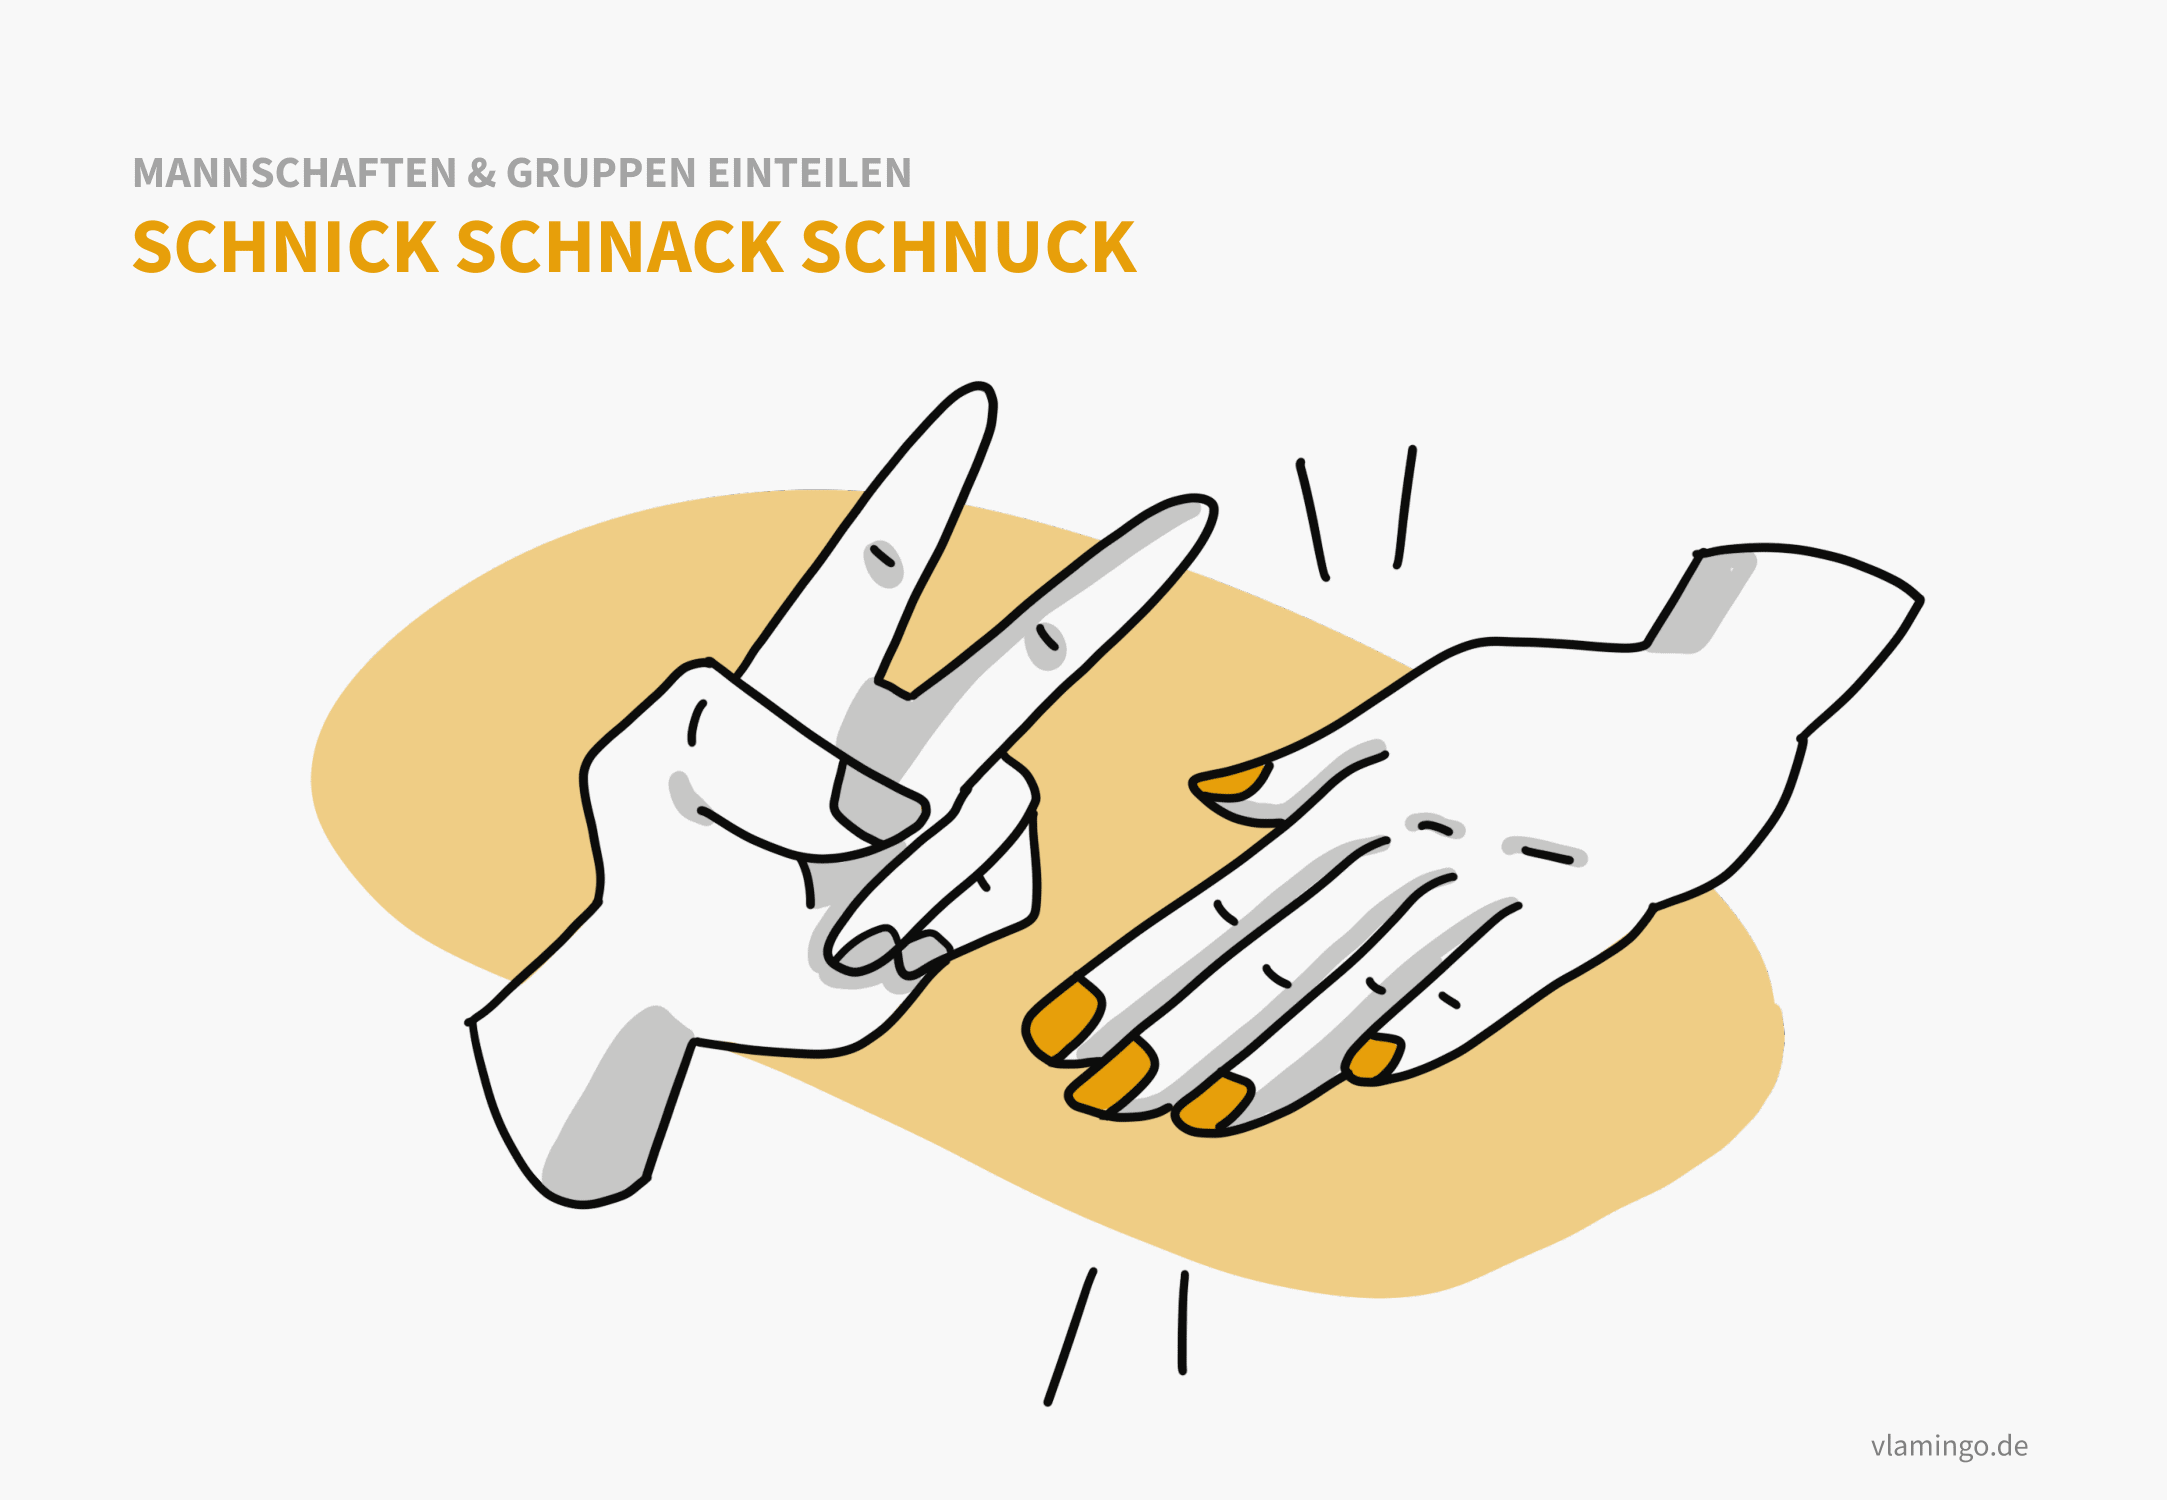 Schnick-Schnack-Schnuck - Einteilung von Mannschaften